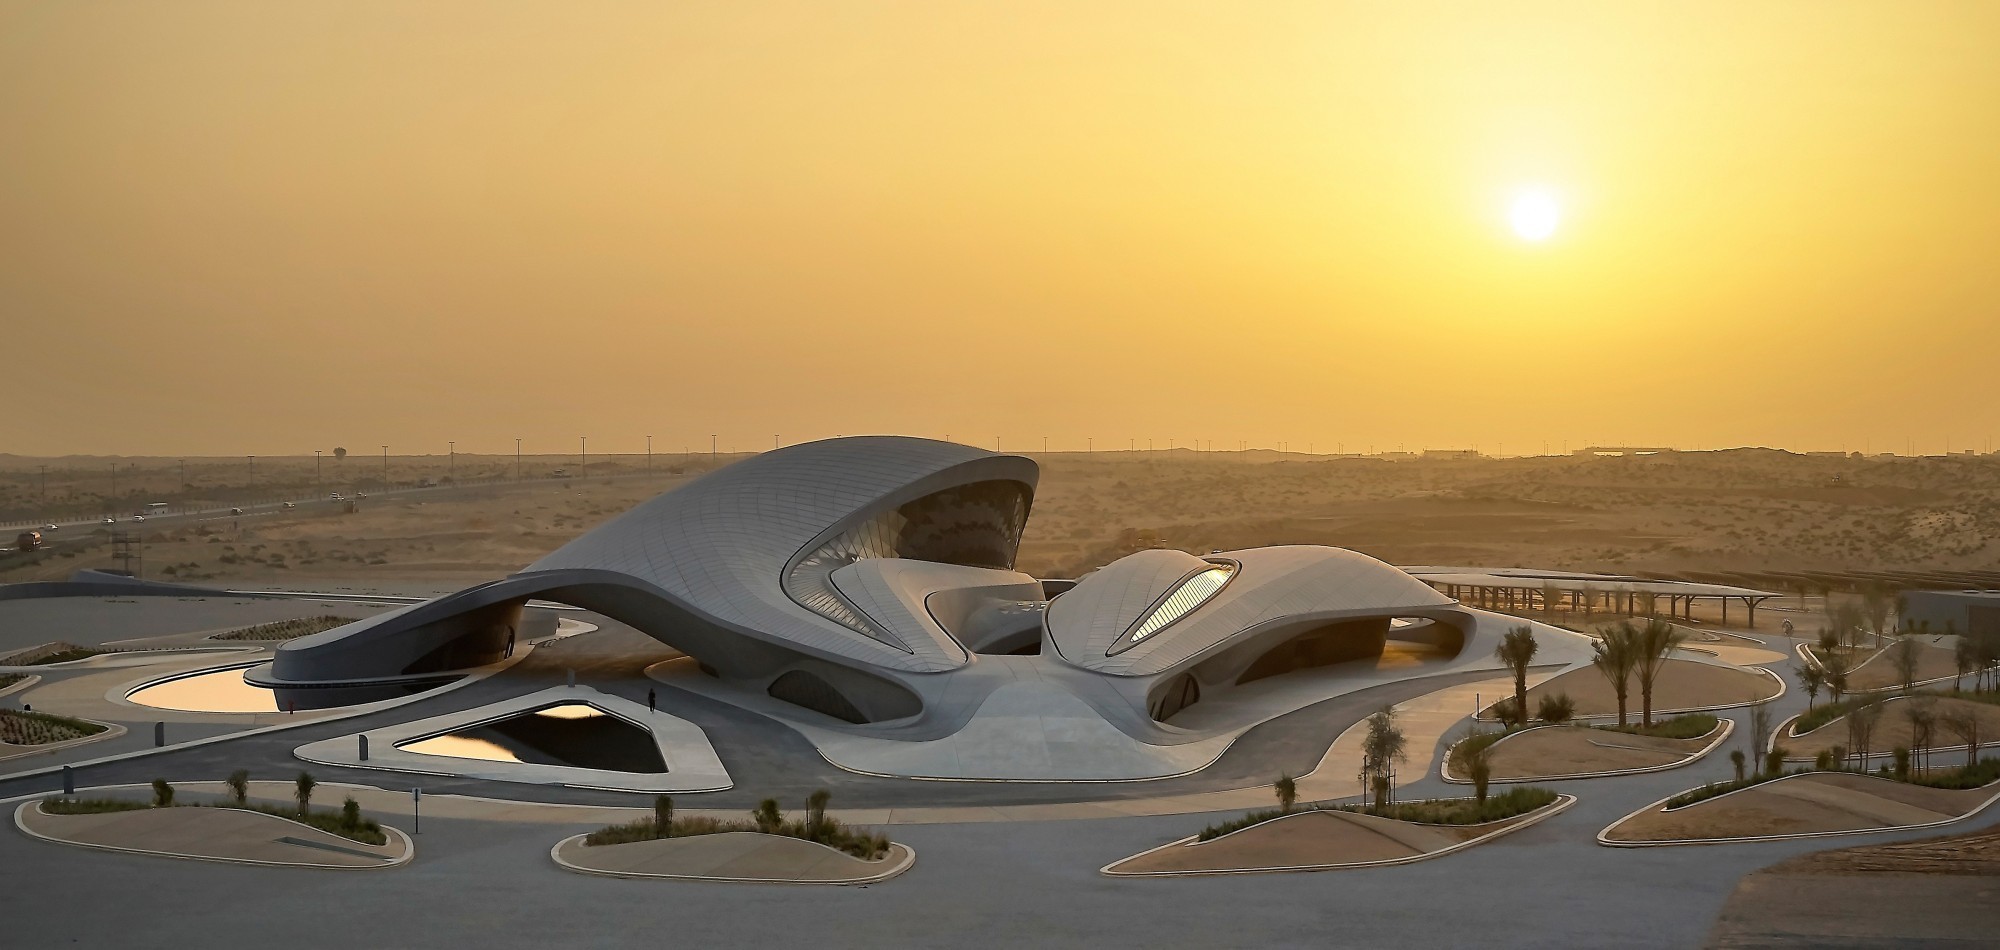 Le bâtiment situé près de Sharjah, dans les Émirats arabes unis, révèle dès le premier coup d'œil la signature de la défunte architecte Zaha Hadid. Alimenté par l'énergie solaire, il sert de siège social à l'organisation de développement durable Beeah Gro